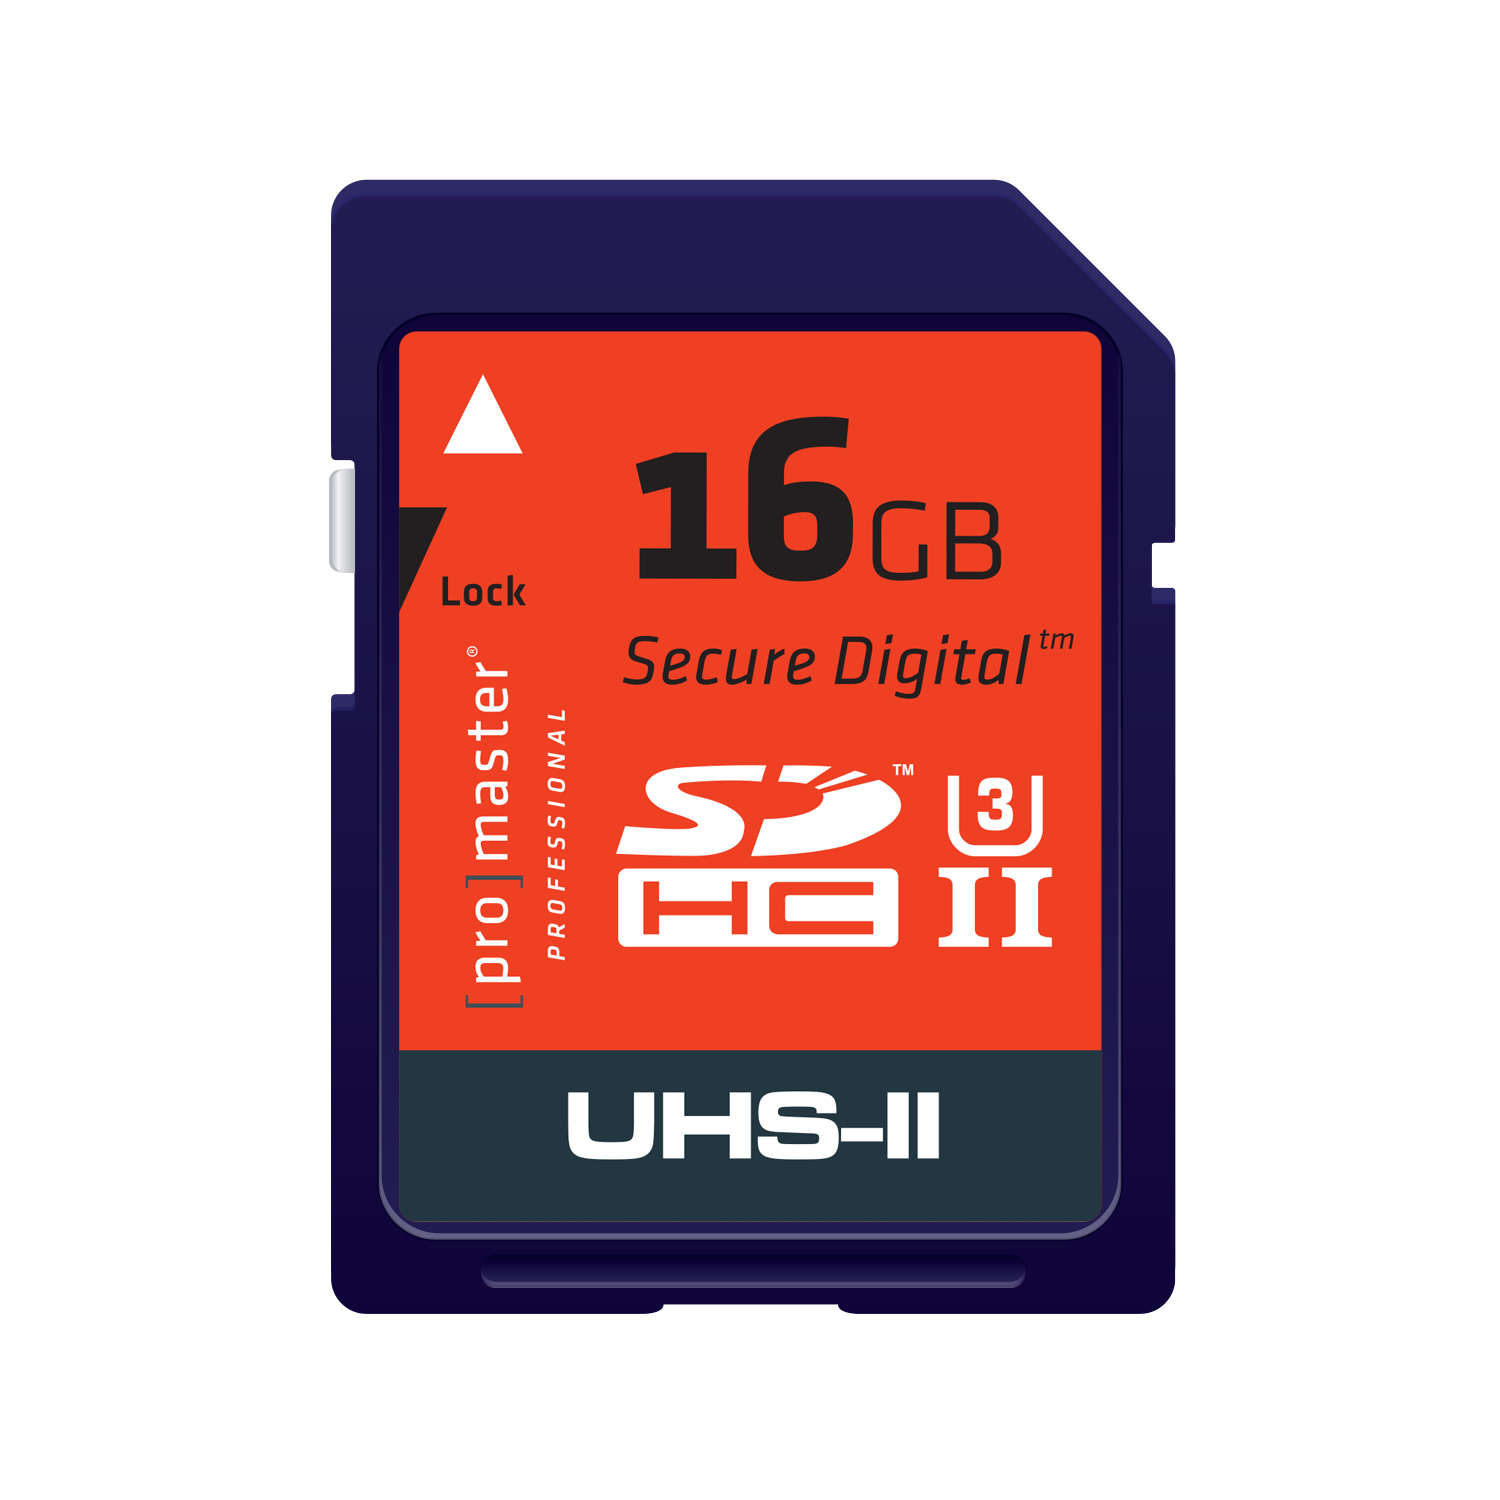 Promaster 9759 16GB SD Card UHS-II